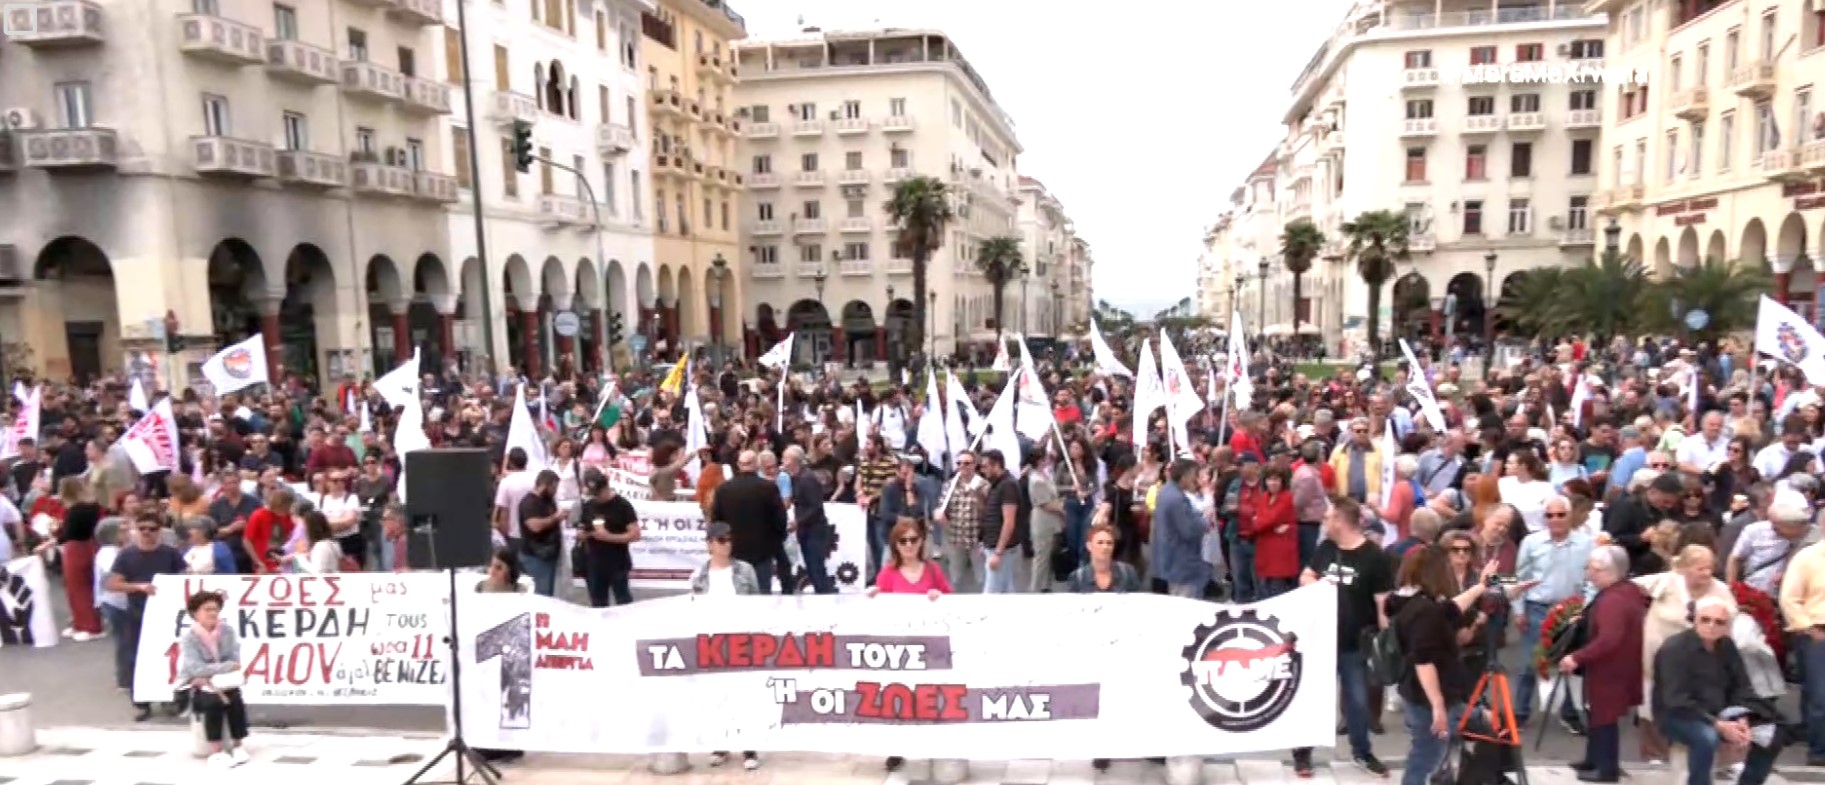 Με συγκεντρώσεις και πορείες τιμήθηκε η Εργατική Πρωτομαγιά στη Θεσσαλονίκη